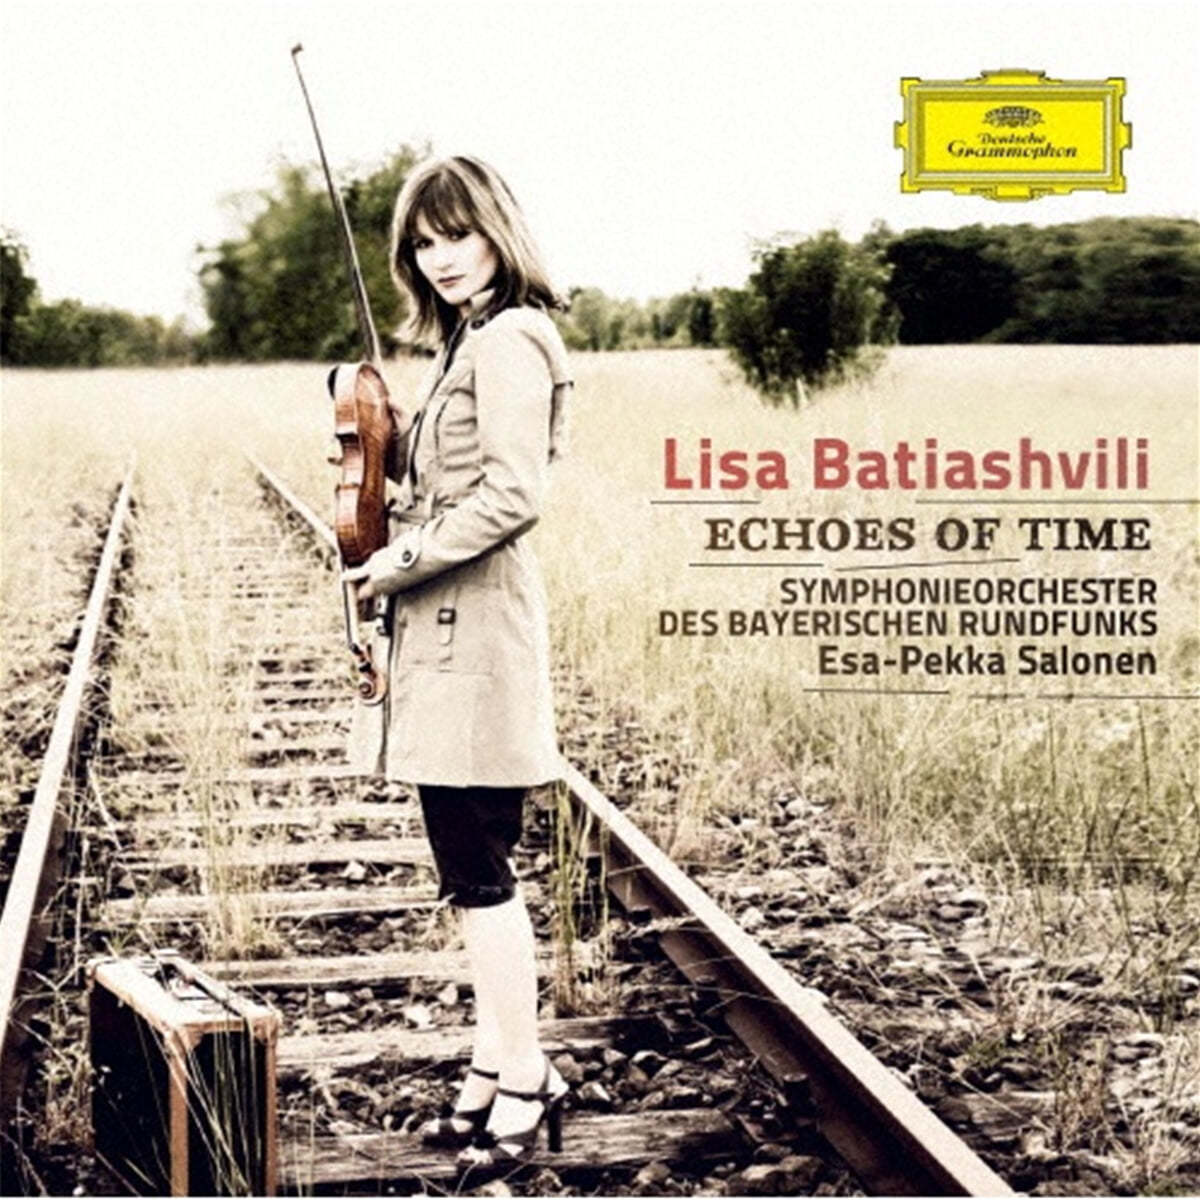 Lisa Batiashvili 쇼스타코비치: 바이올린 협주곡 1번 / 라흐마니노프: 보칼리제 / 아르보 패르트: 거울 속의 거울 (Echoes of Time)